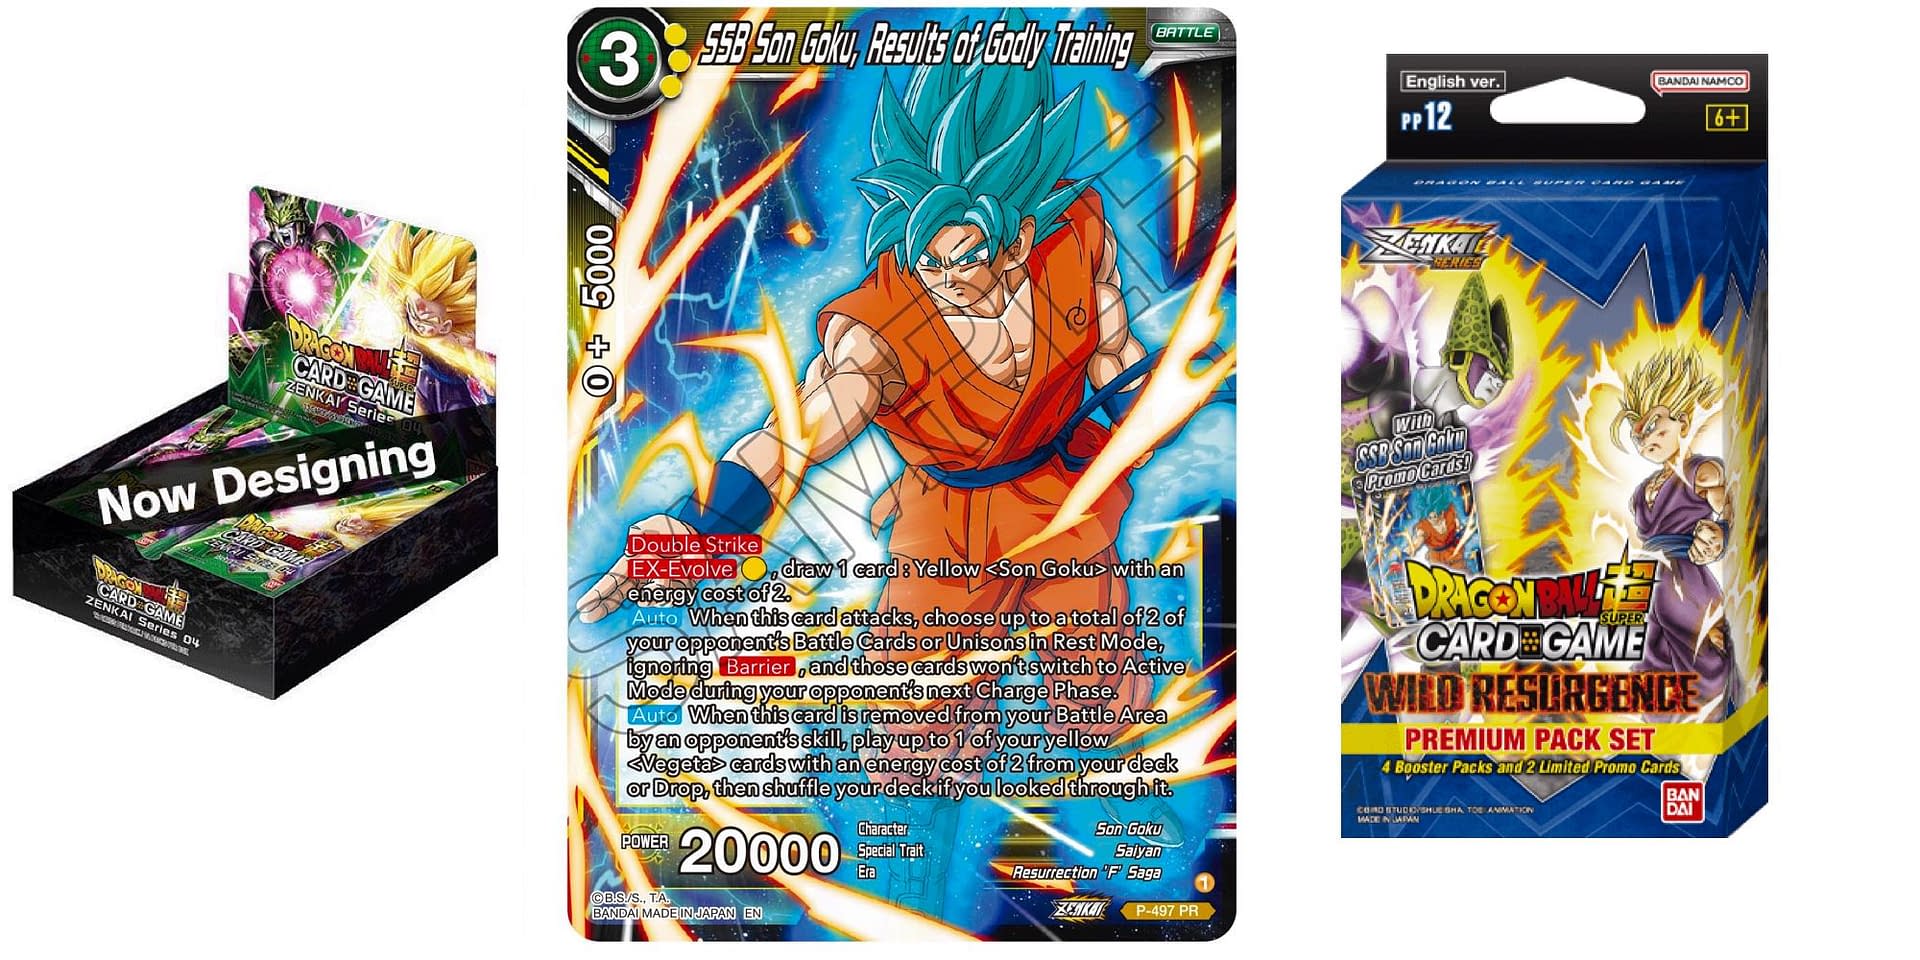 Unique Goku Pack